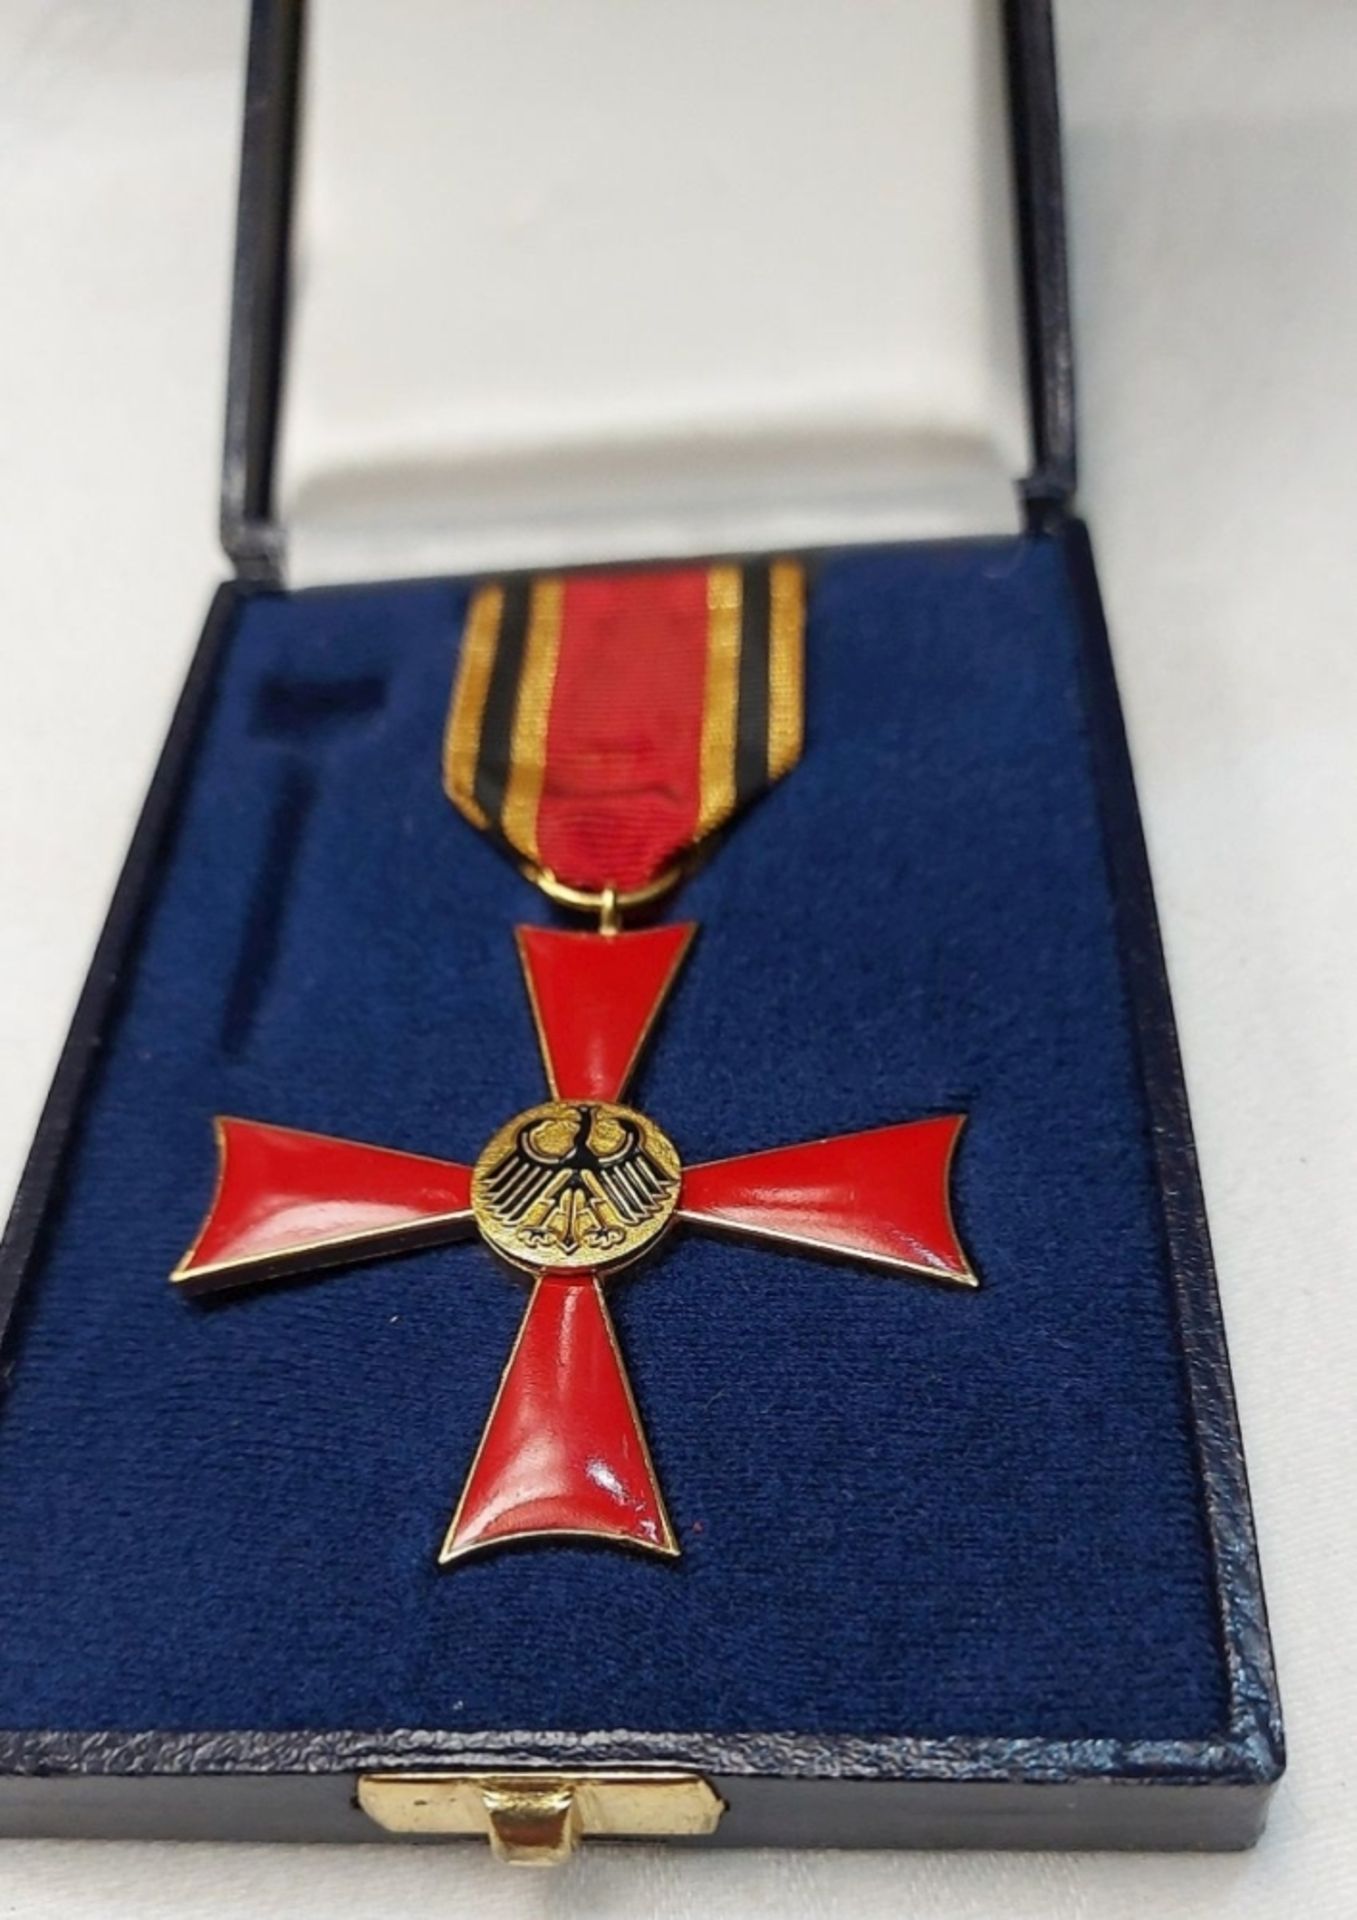 Verdienstorden der Bundesrepublik Deutschland Bundesverdienstkreuz in Original Box - Bild 3 aus 4